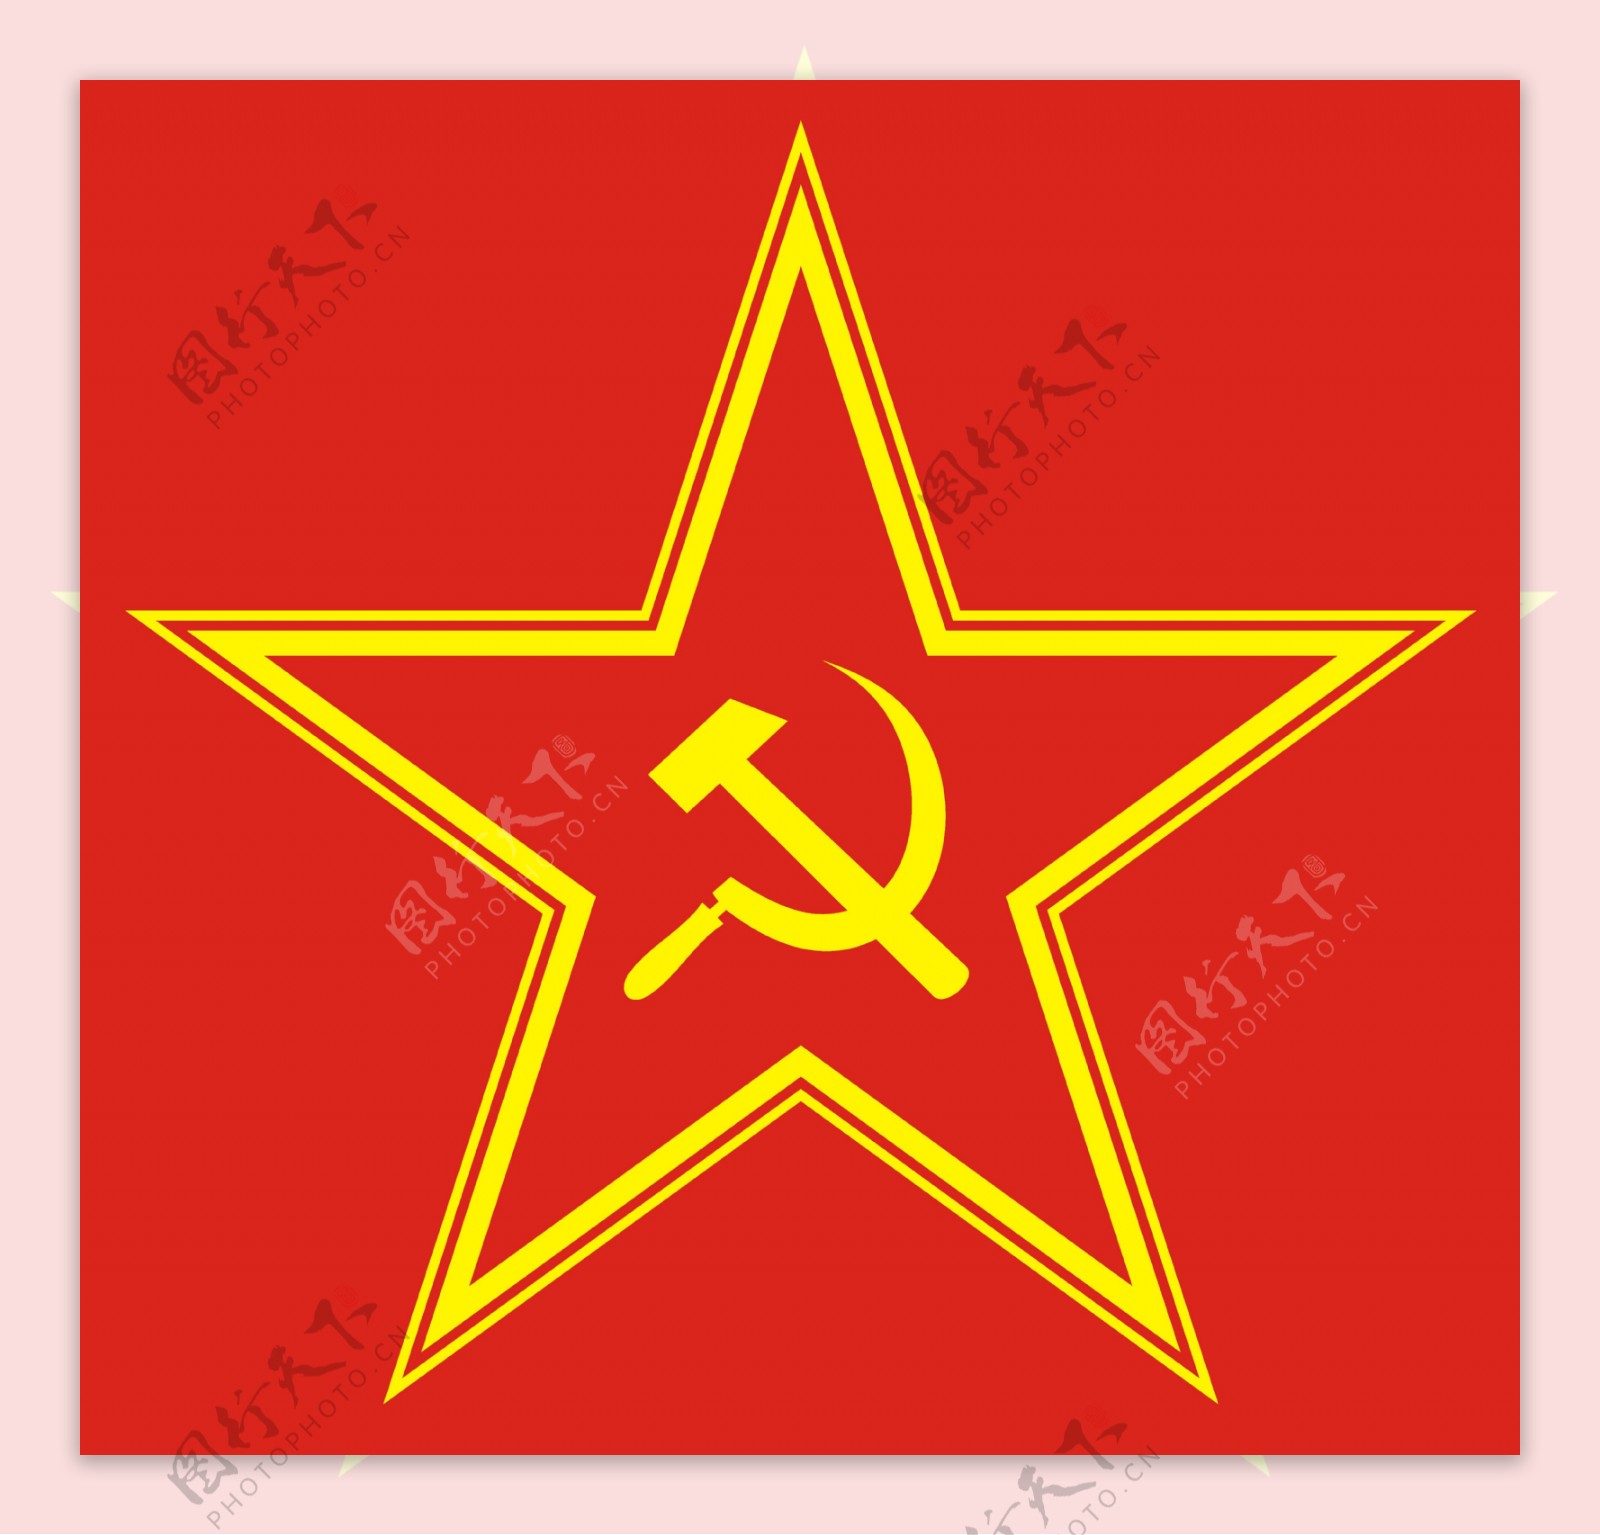 共产主义红色恒星红色背景上的锤子和镰刀